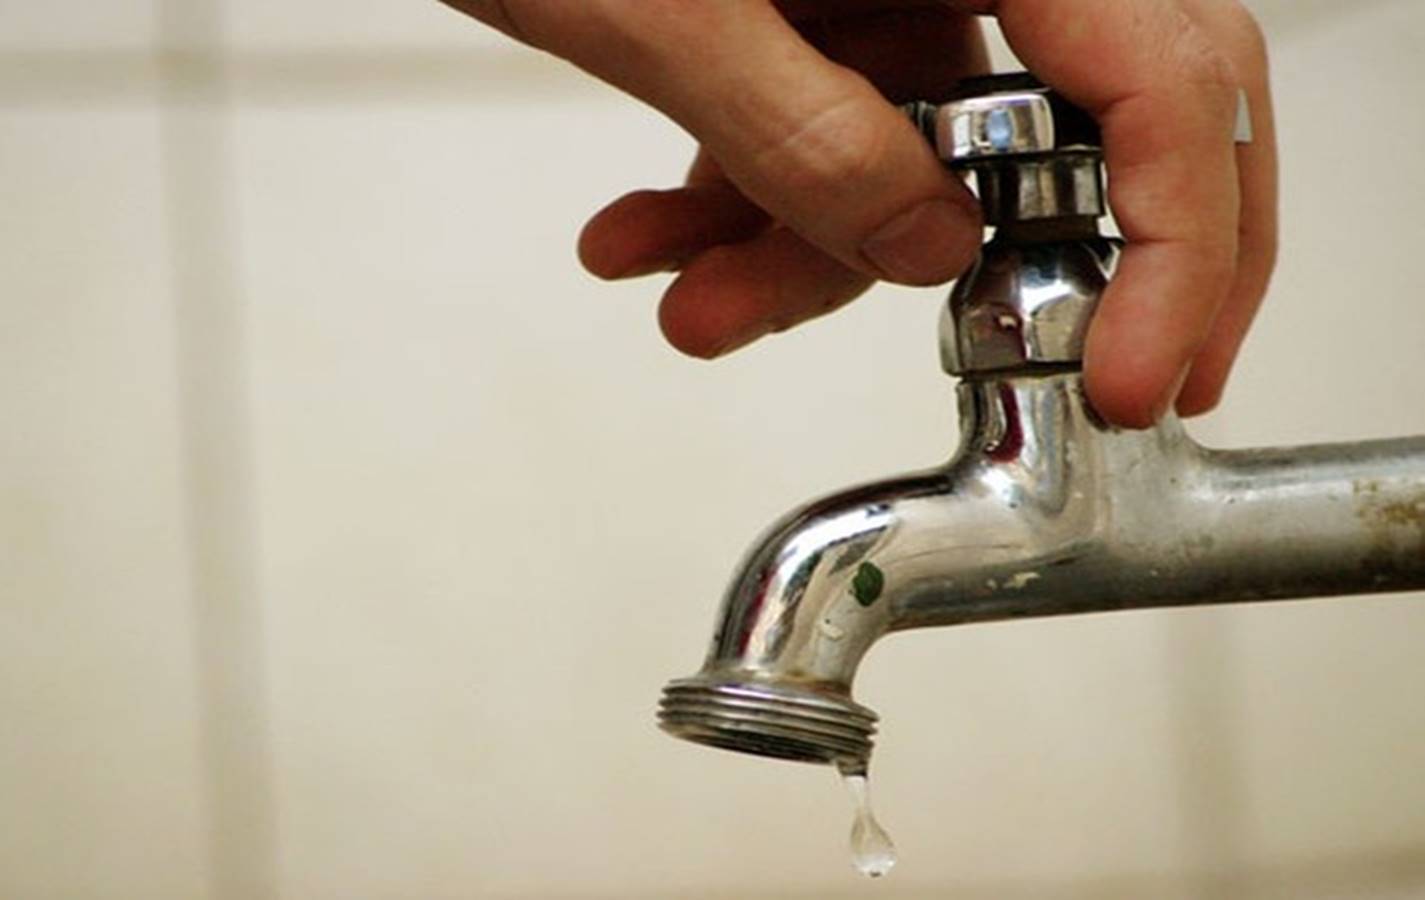  Fornecimento de água é suspenso em 12 bairros de Simões Filho e Salvador; confira